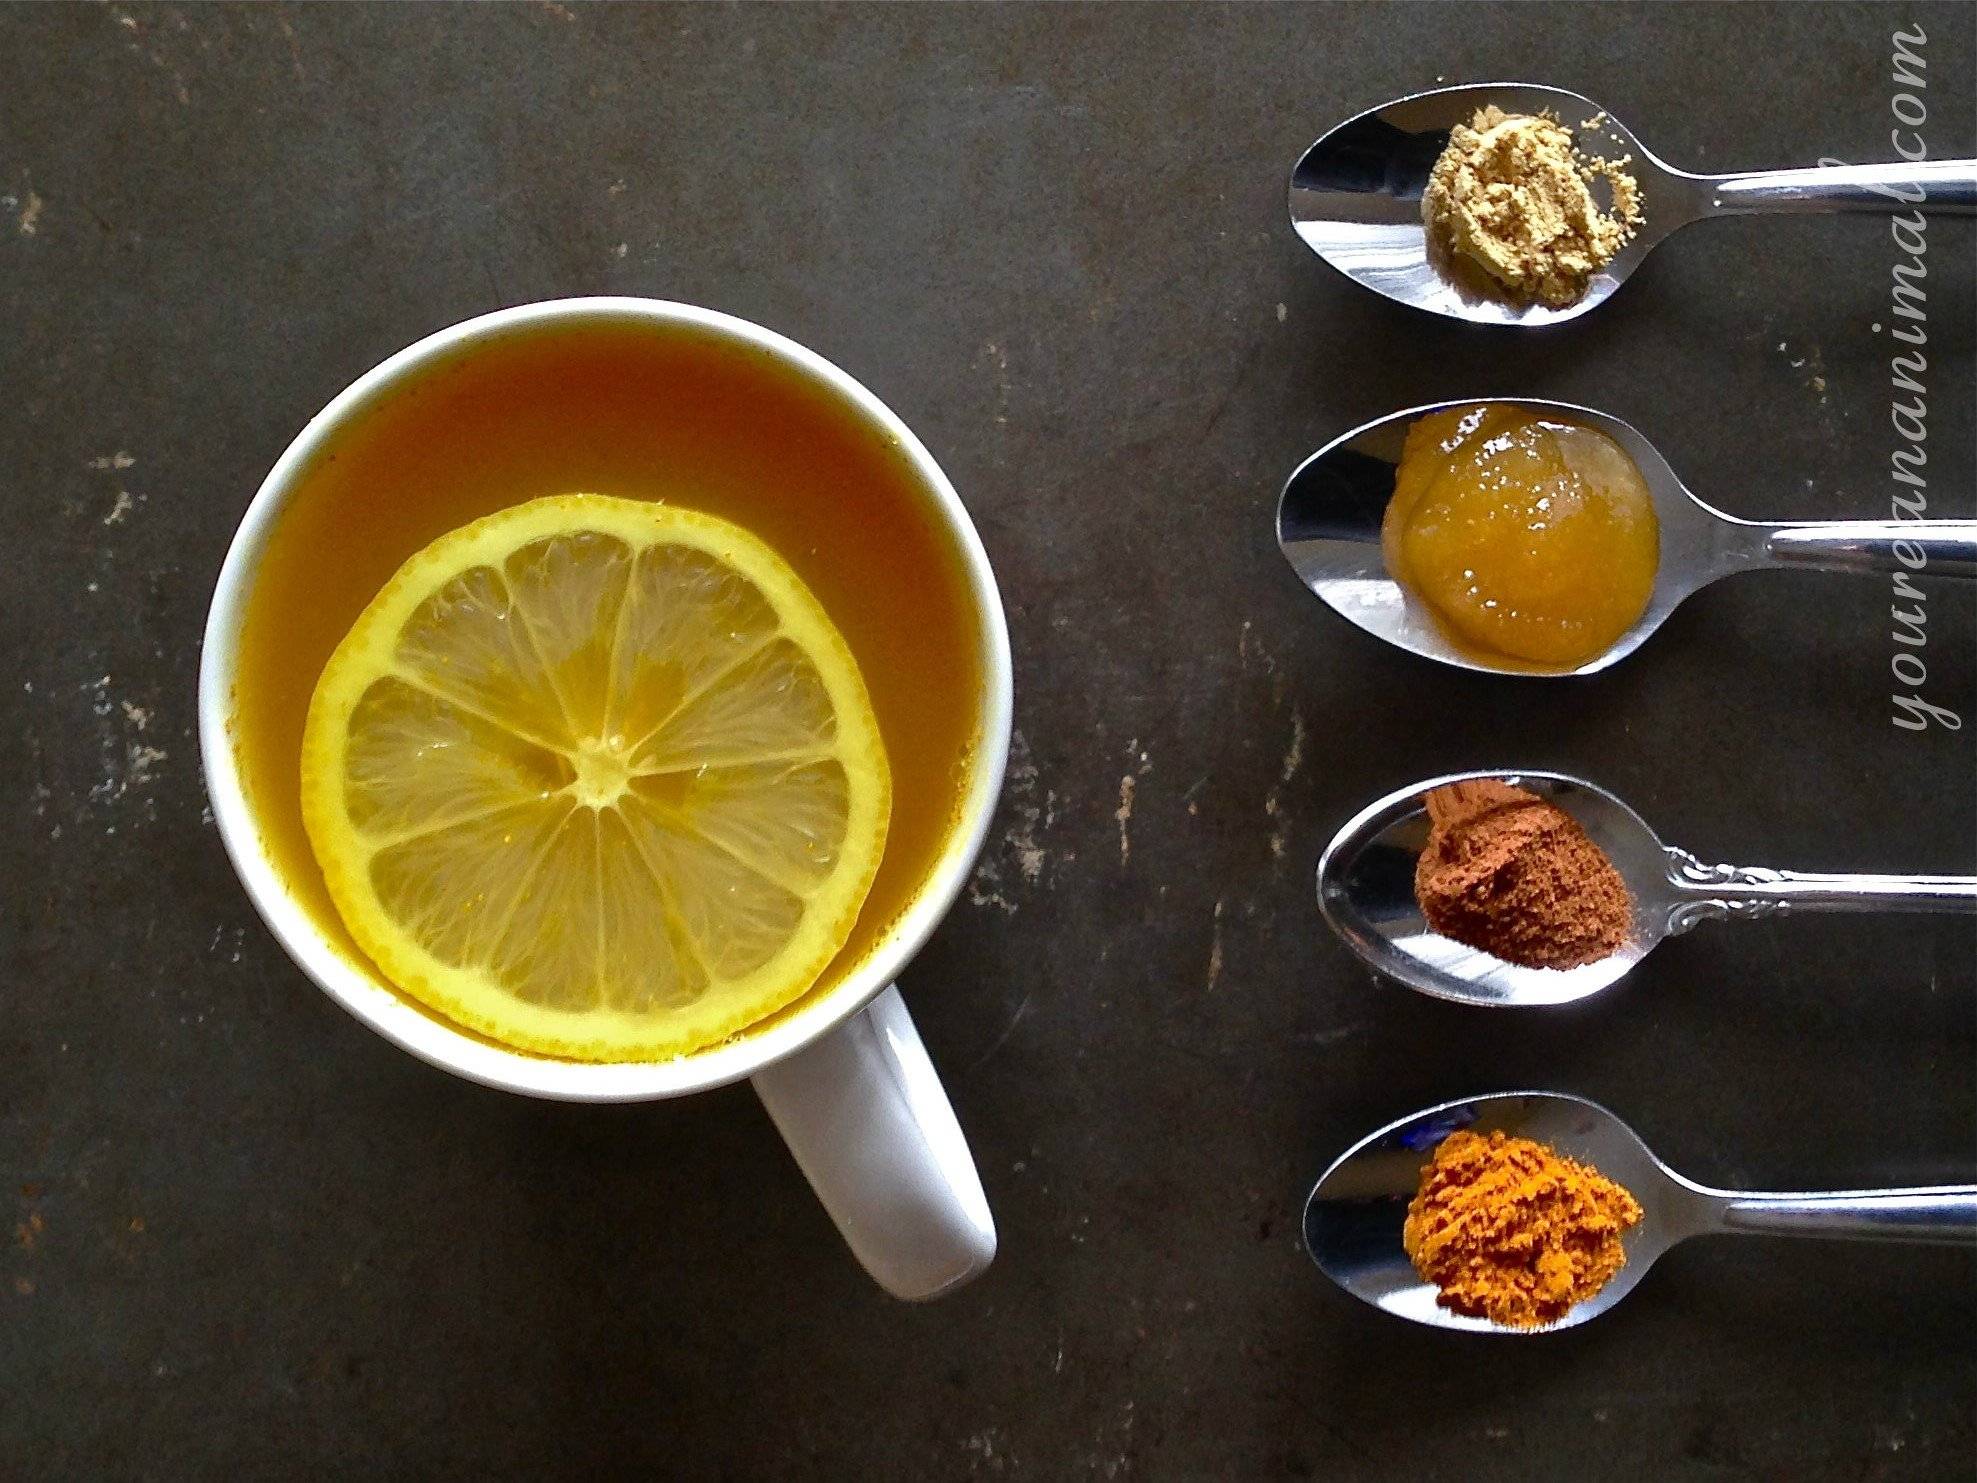 А вы знаете, насколько велика польза чая с куркумой для здоровья?
а вы знаете, насколько велика польза чая с куркумой для здоровья?